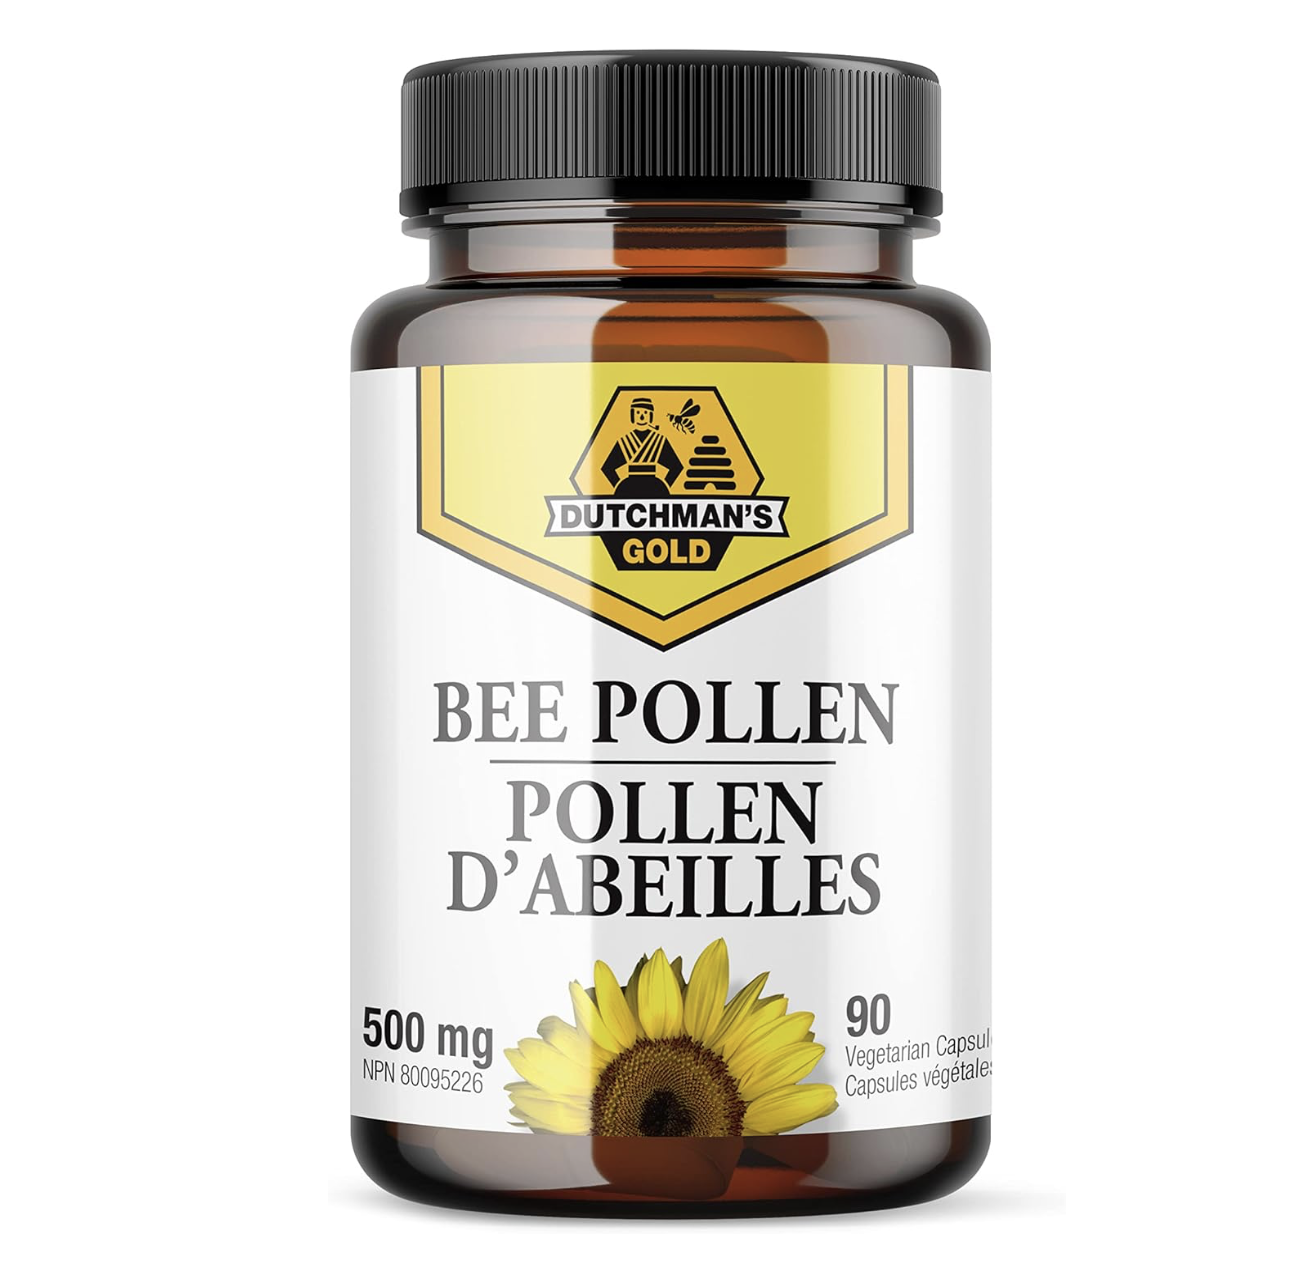 Bee pollen capsules on amazon